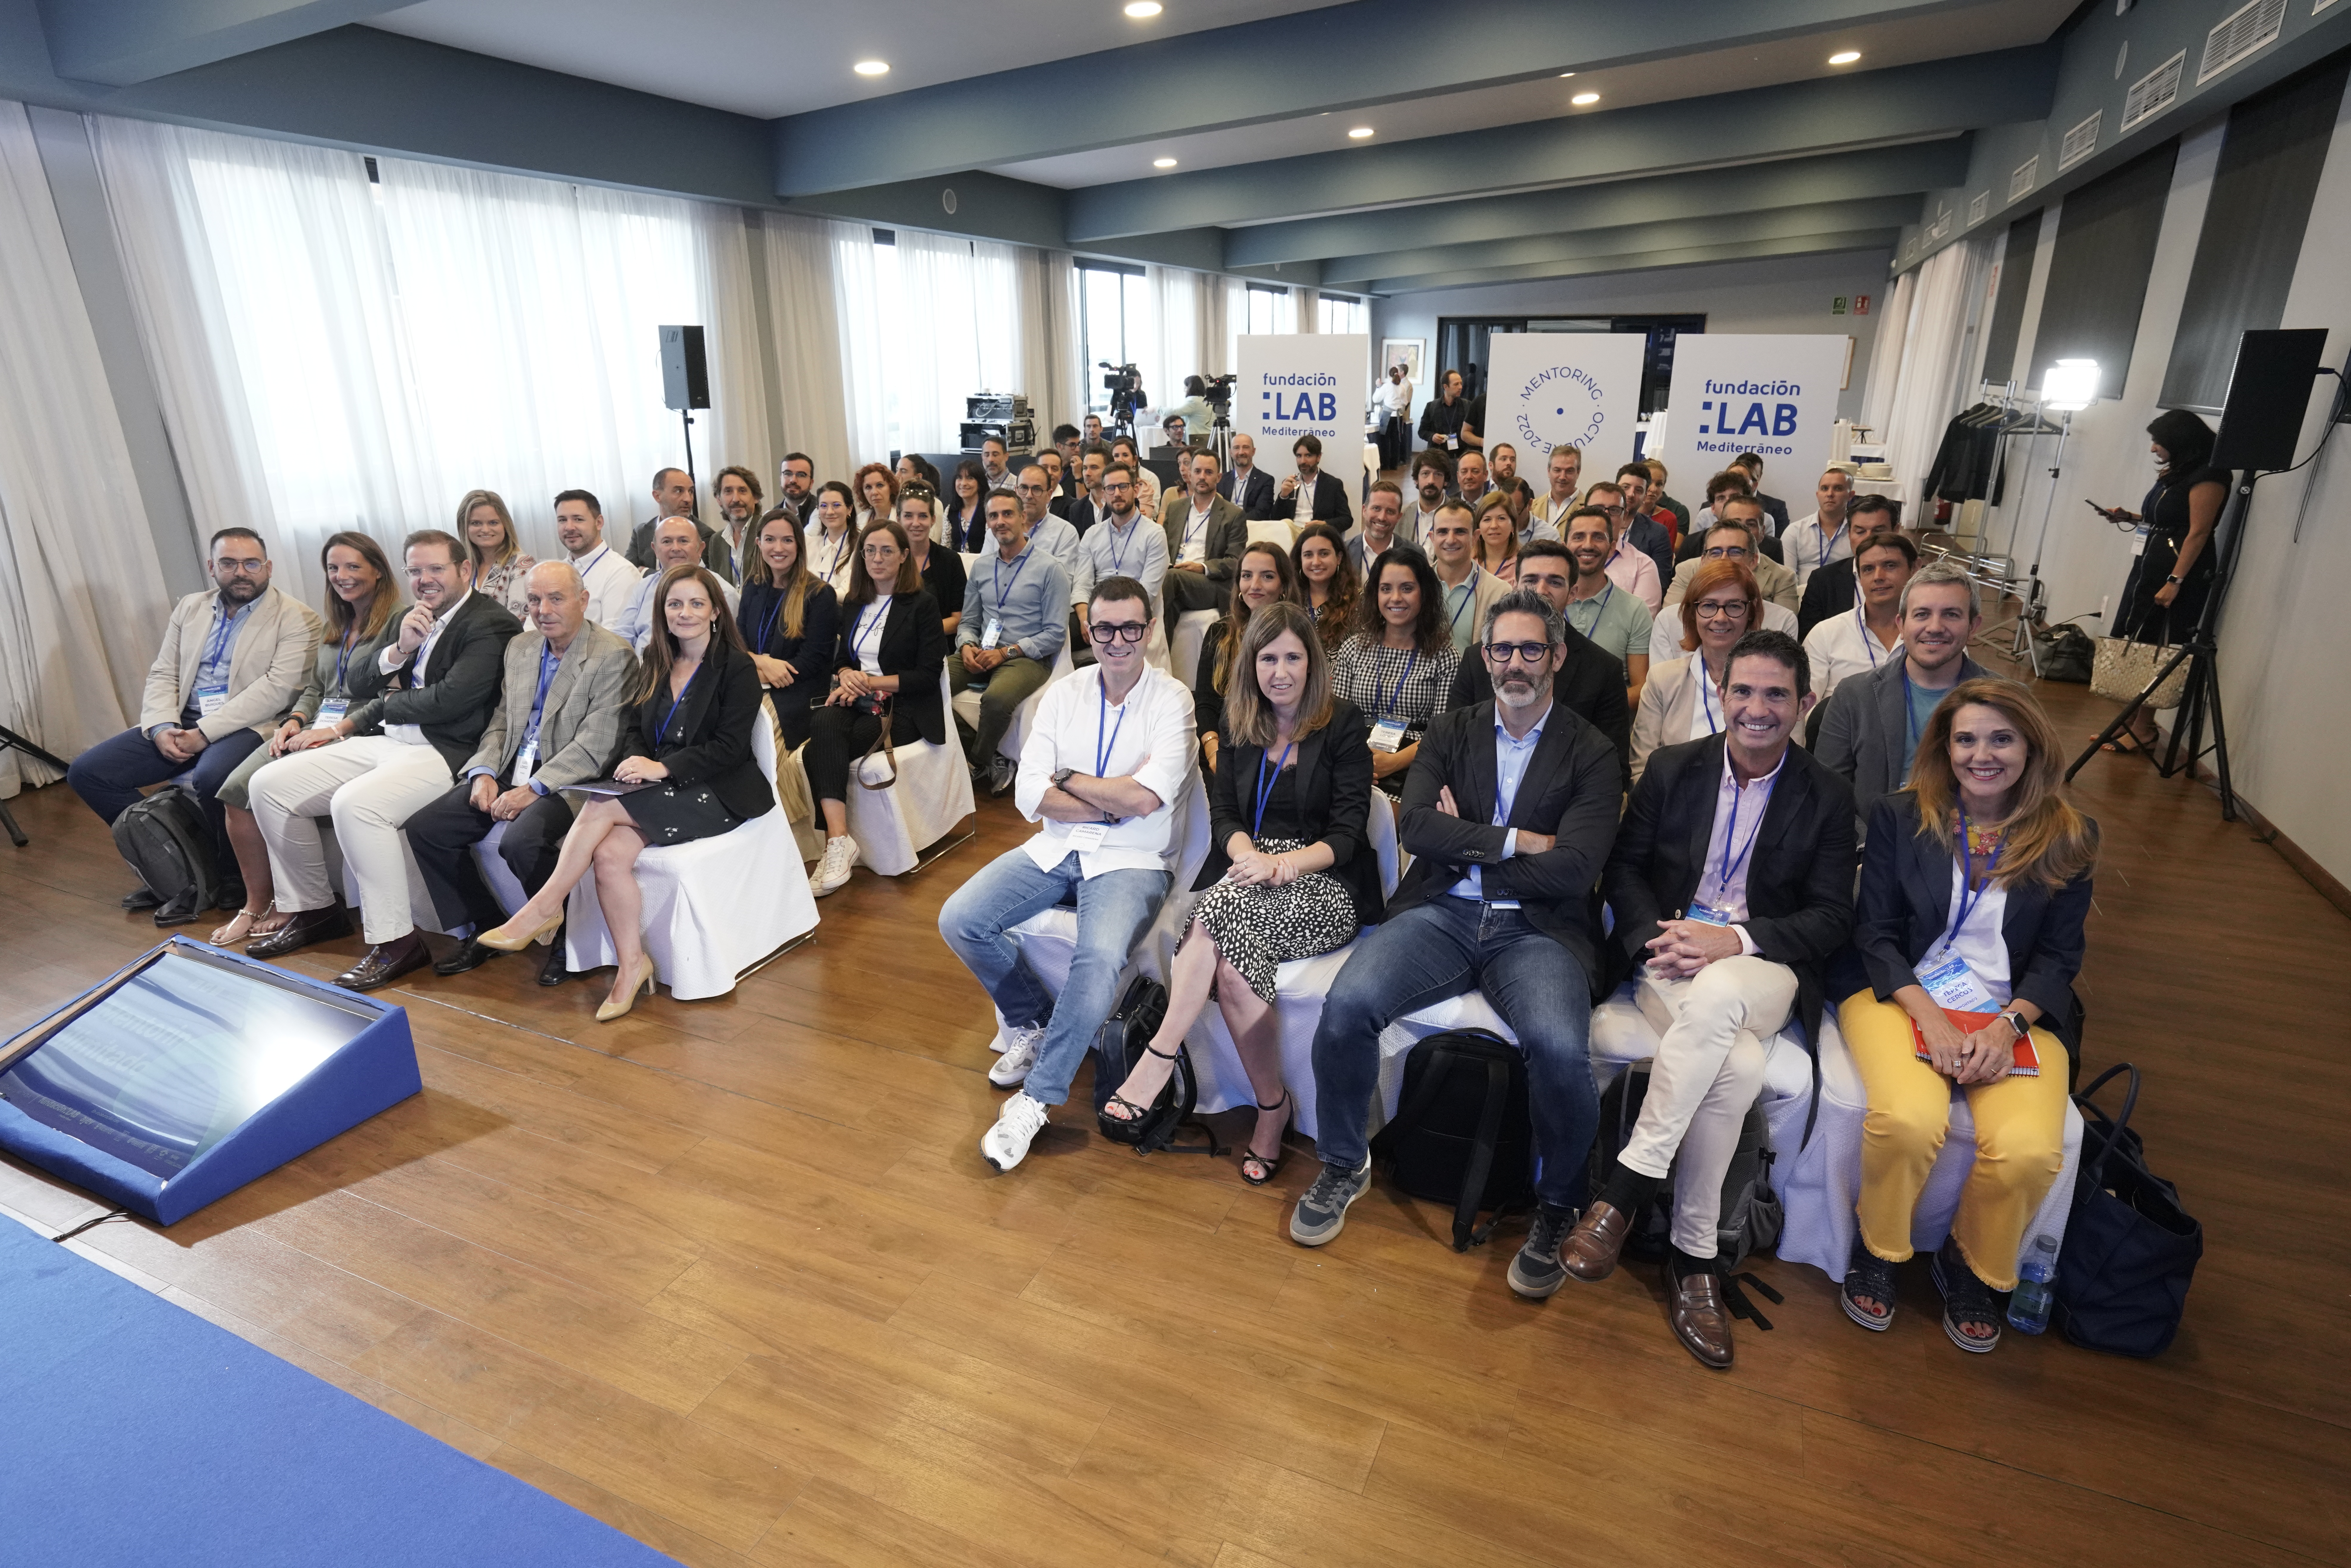 Fundación LAB Mediterráneo organiza un “Mentoring Ilimitado” para ayudar a las pymes a superar retos de innovación y tecnología